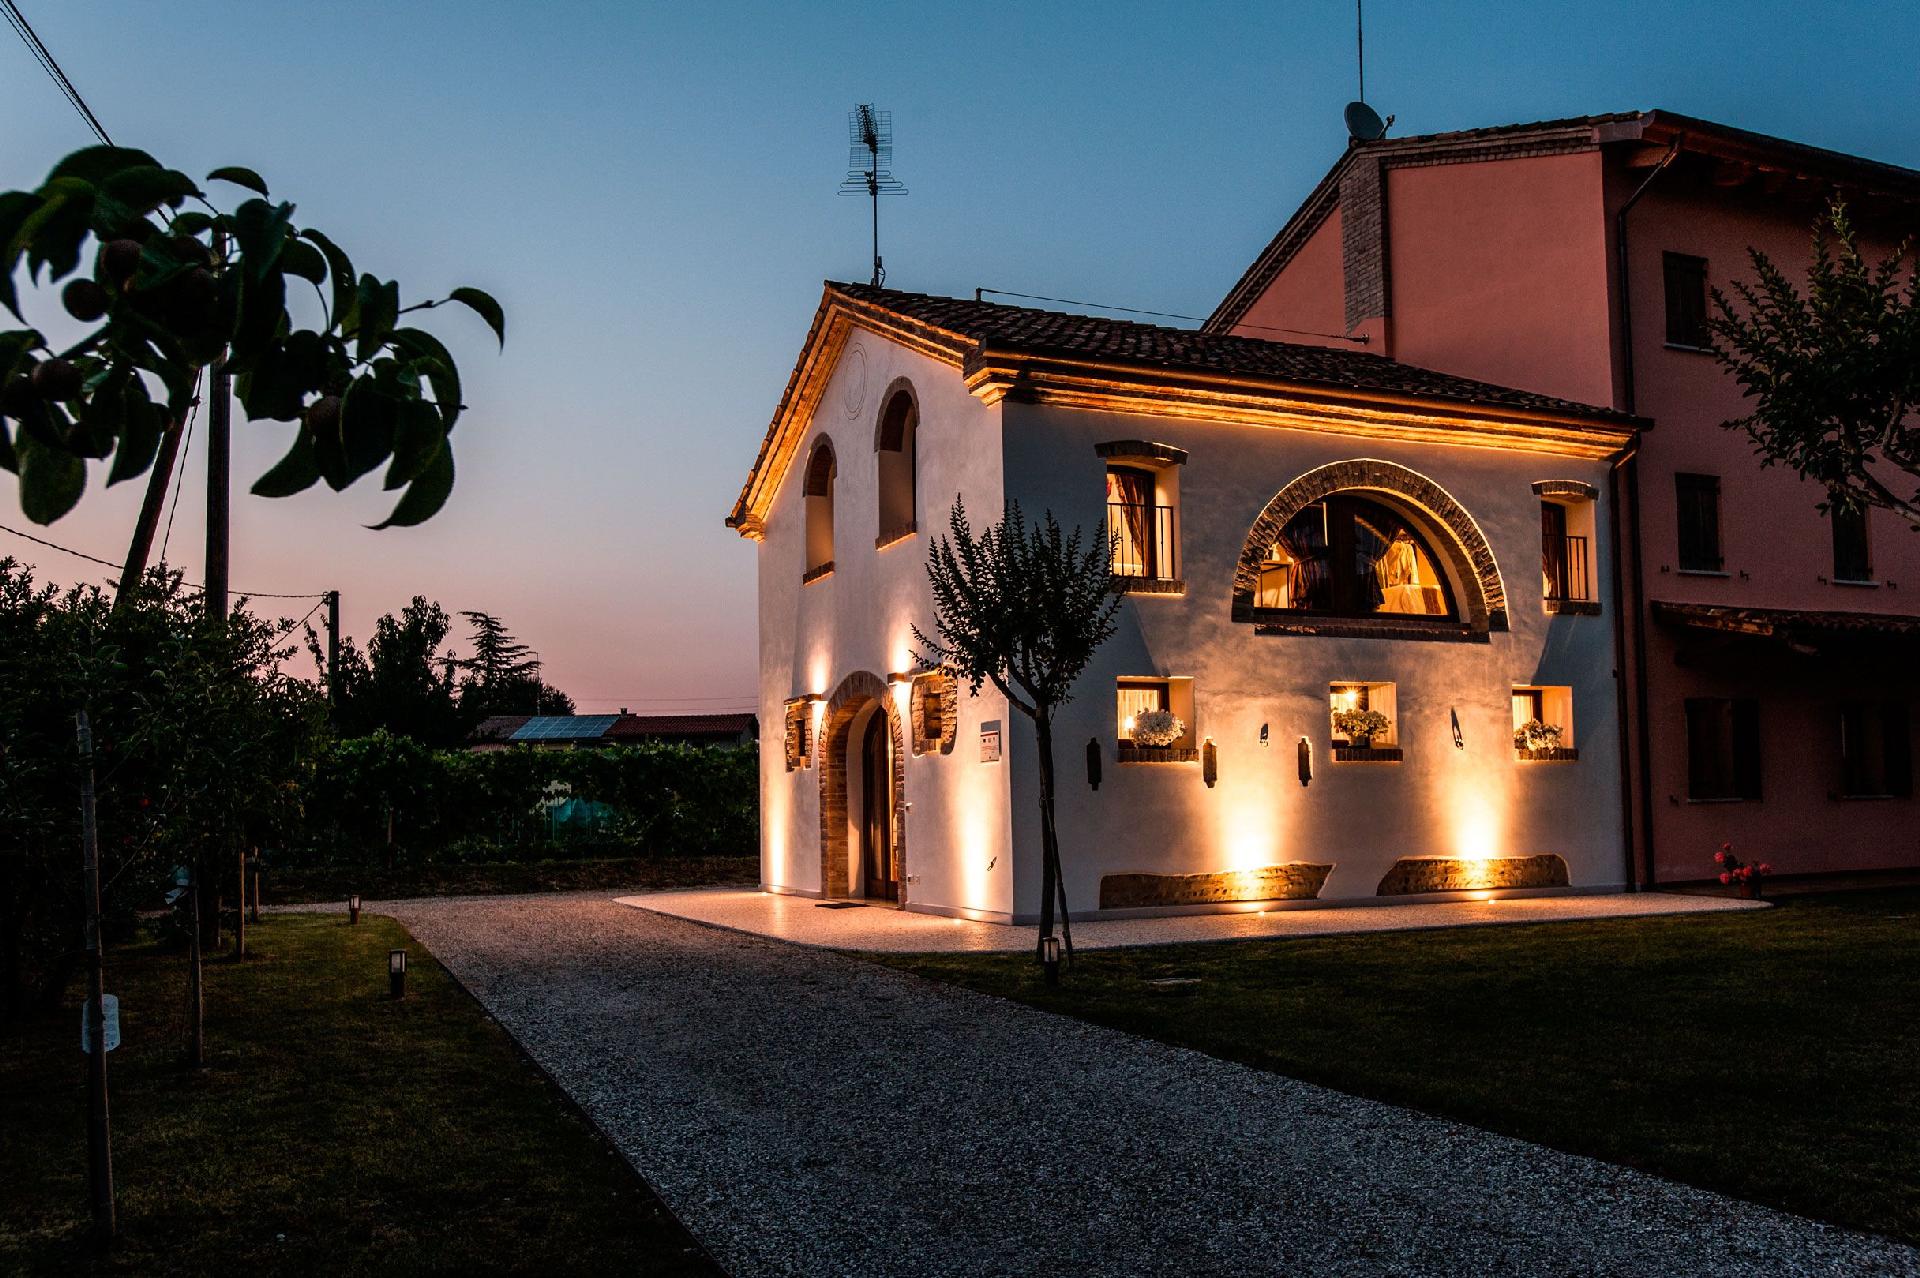 Schöne Ferienwohnung mit rustikalem Flair, di Ferienhaus in Italien